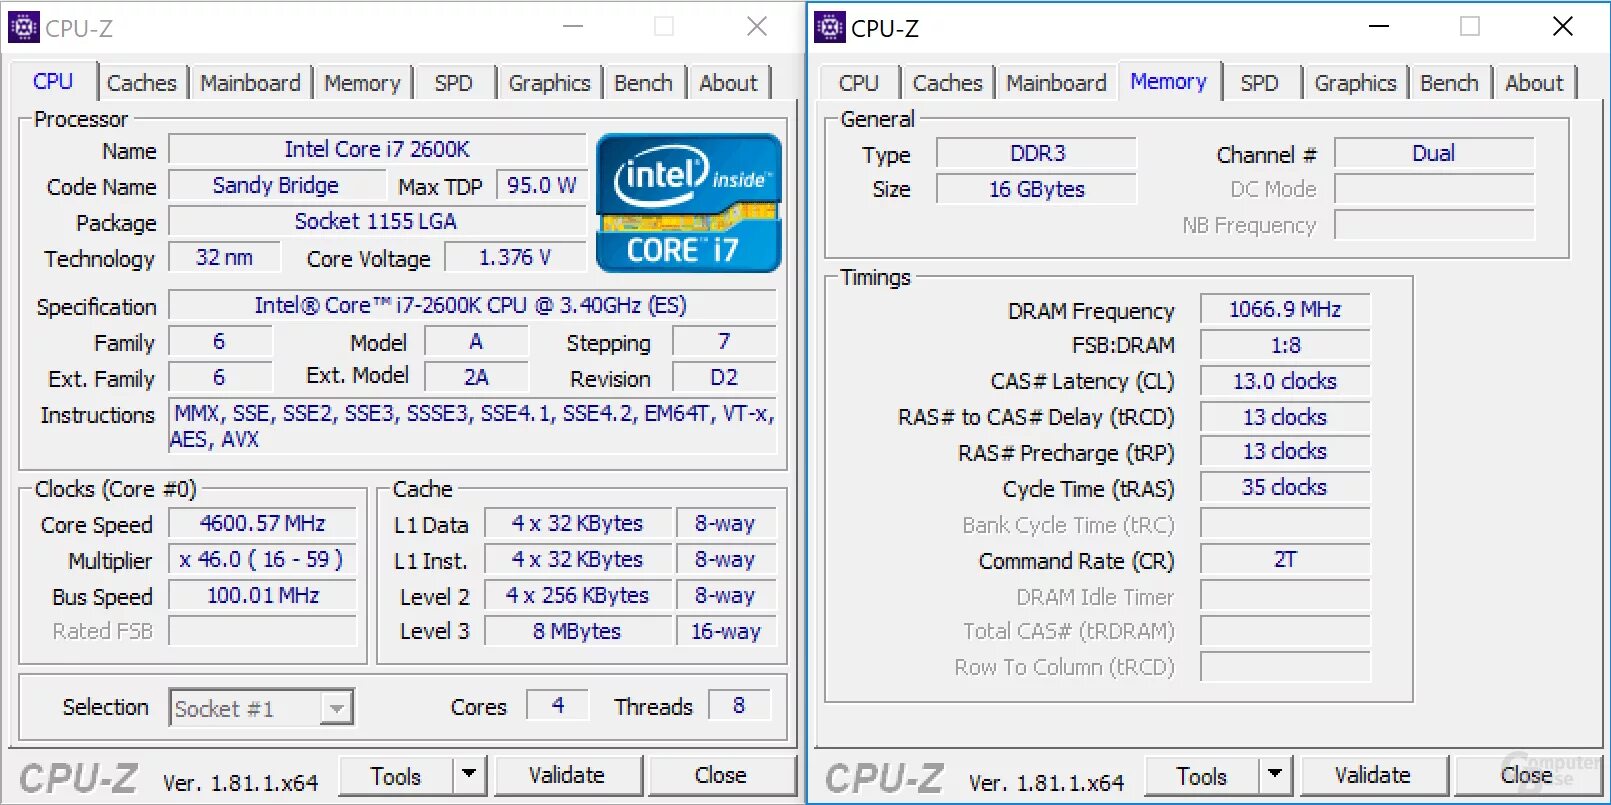 CPU-Z Core i3 2120. I5 3570 CPU Z. Core i5-12400 CPU-Z. I7 2600k CPU Z Benchmark. Intel i7 частота